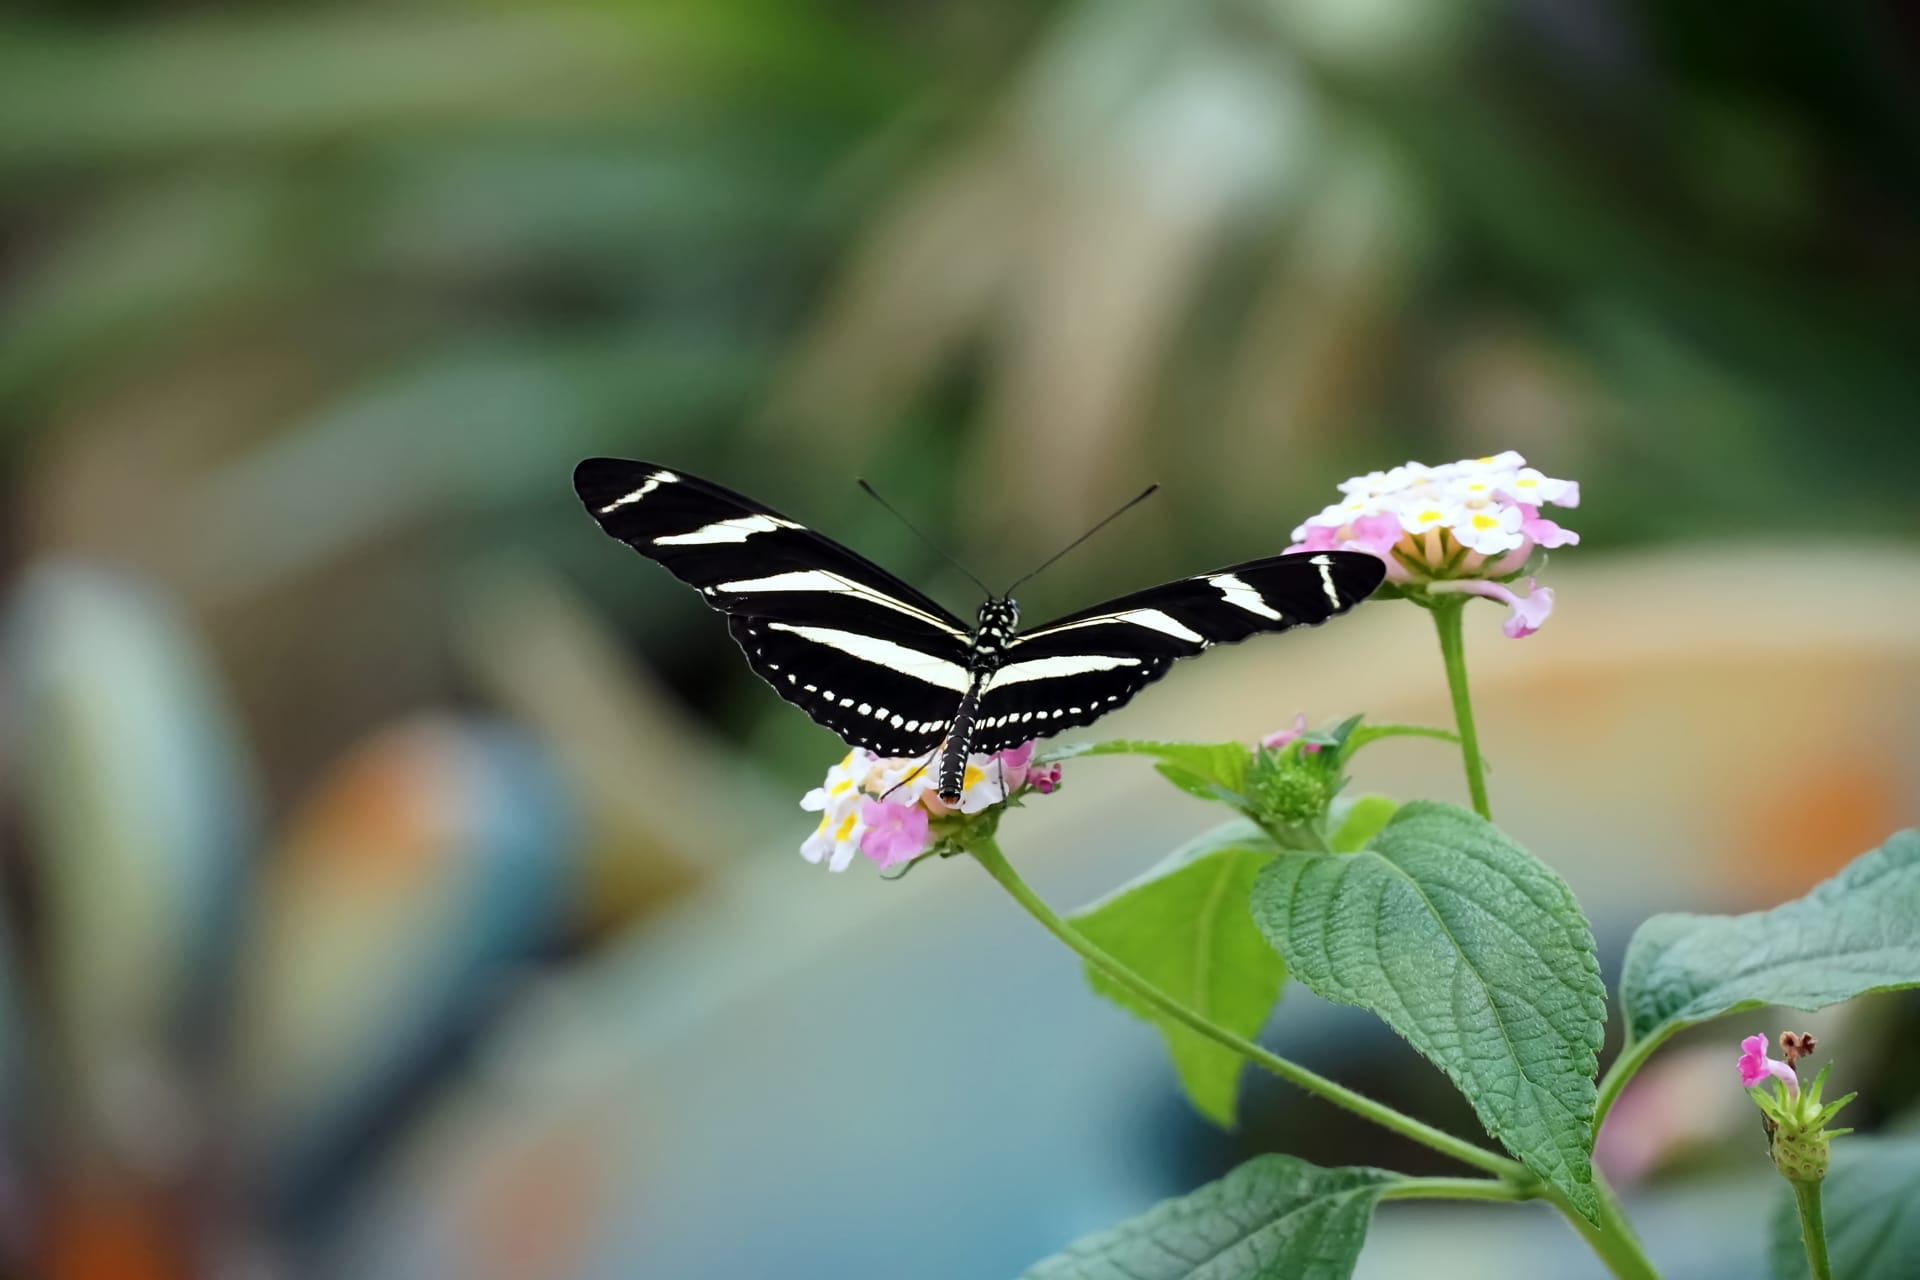 Shot zebra longwing butterfly with open wings light pink flower